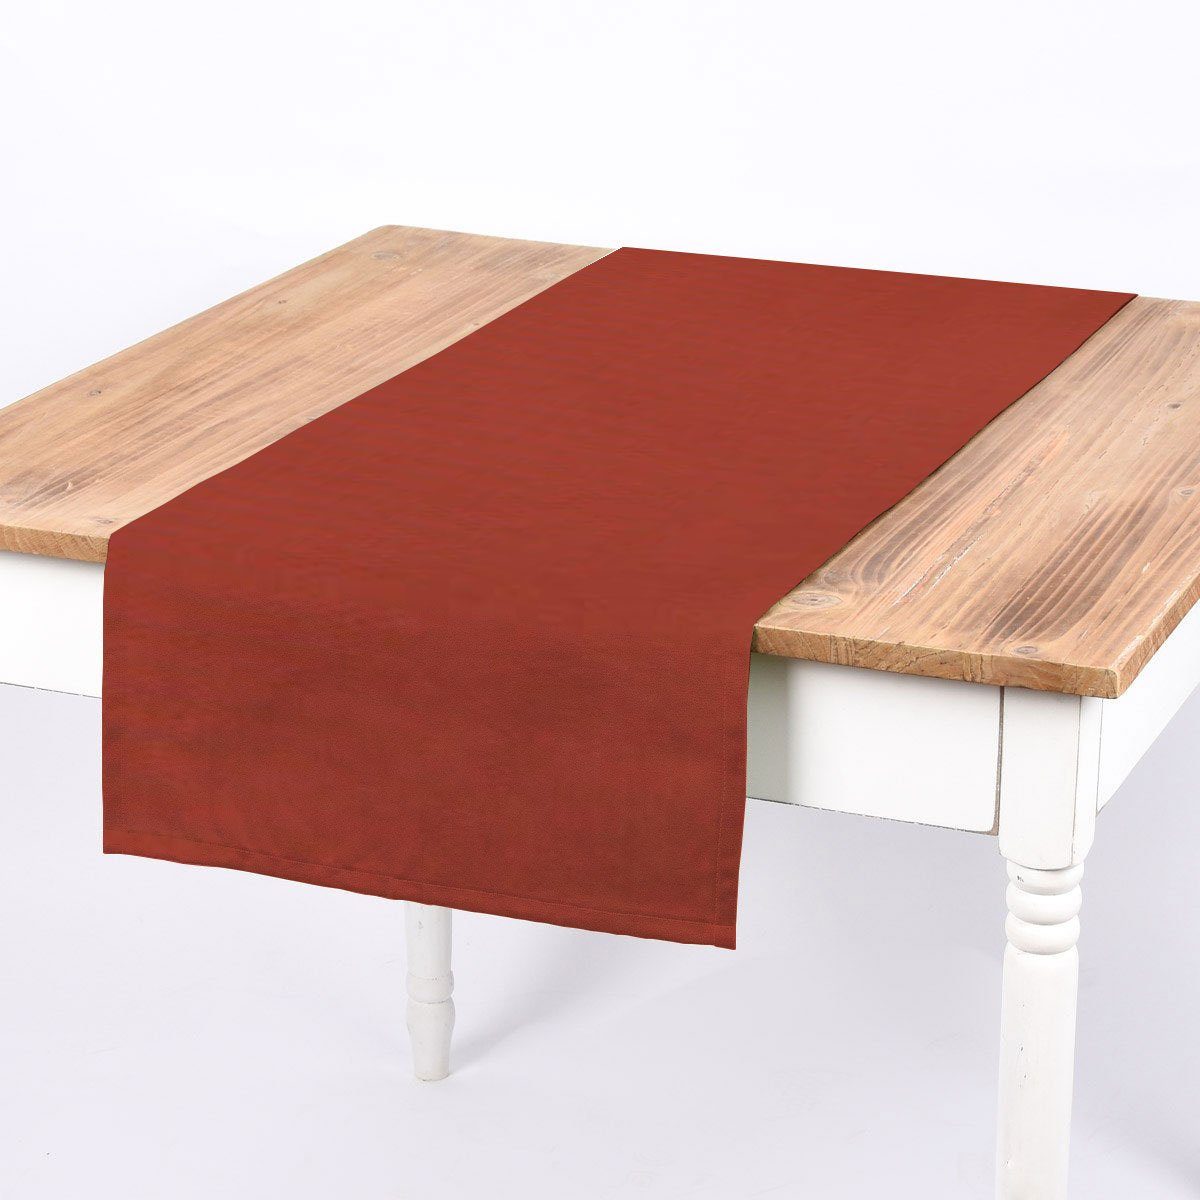 SCHÖNER LEBEN. Tischläufer Tischläufer aus Canvas uni terrakotta 40x160cm von SCHÖNER LEBEN., handmade